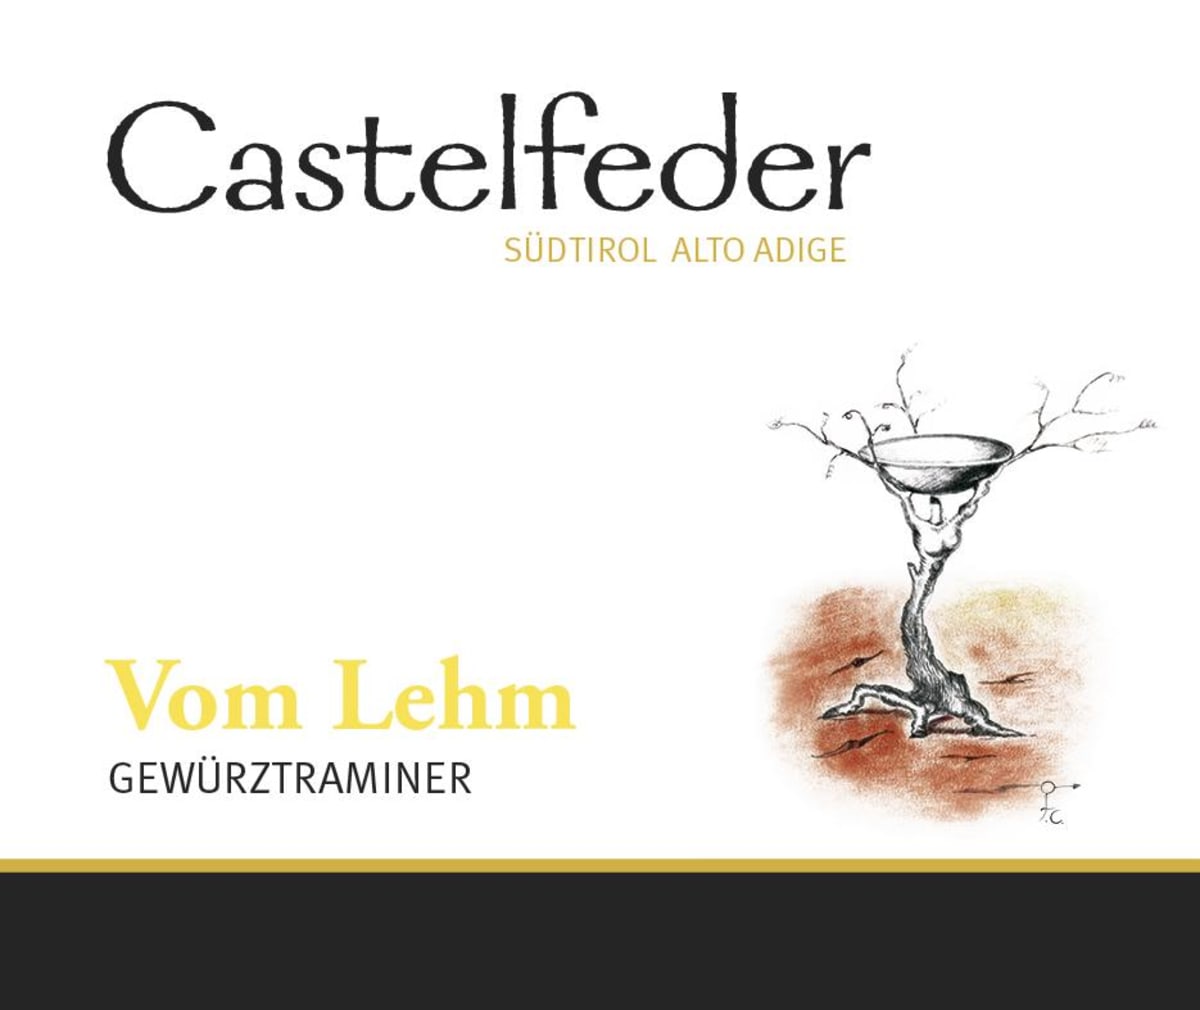 Castelfeder Sudtirol Alto Adige Vom Lehm Gewurztraminer 2012 Front Label